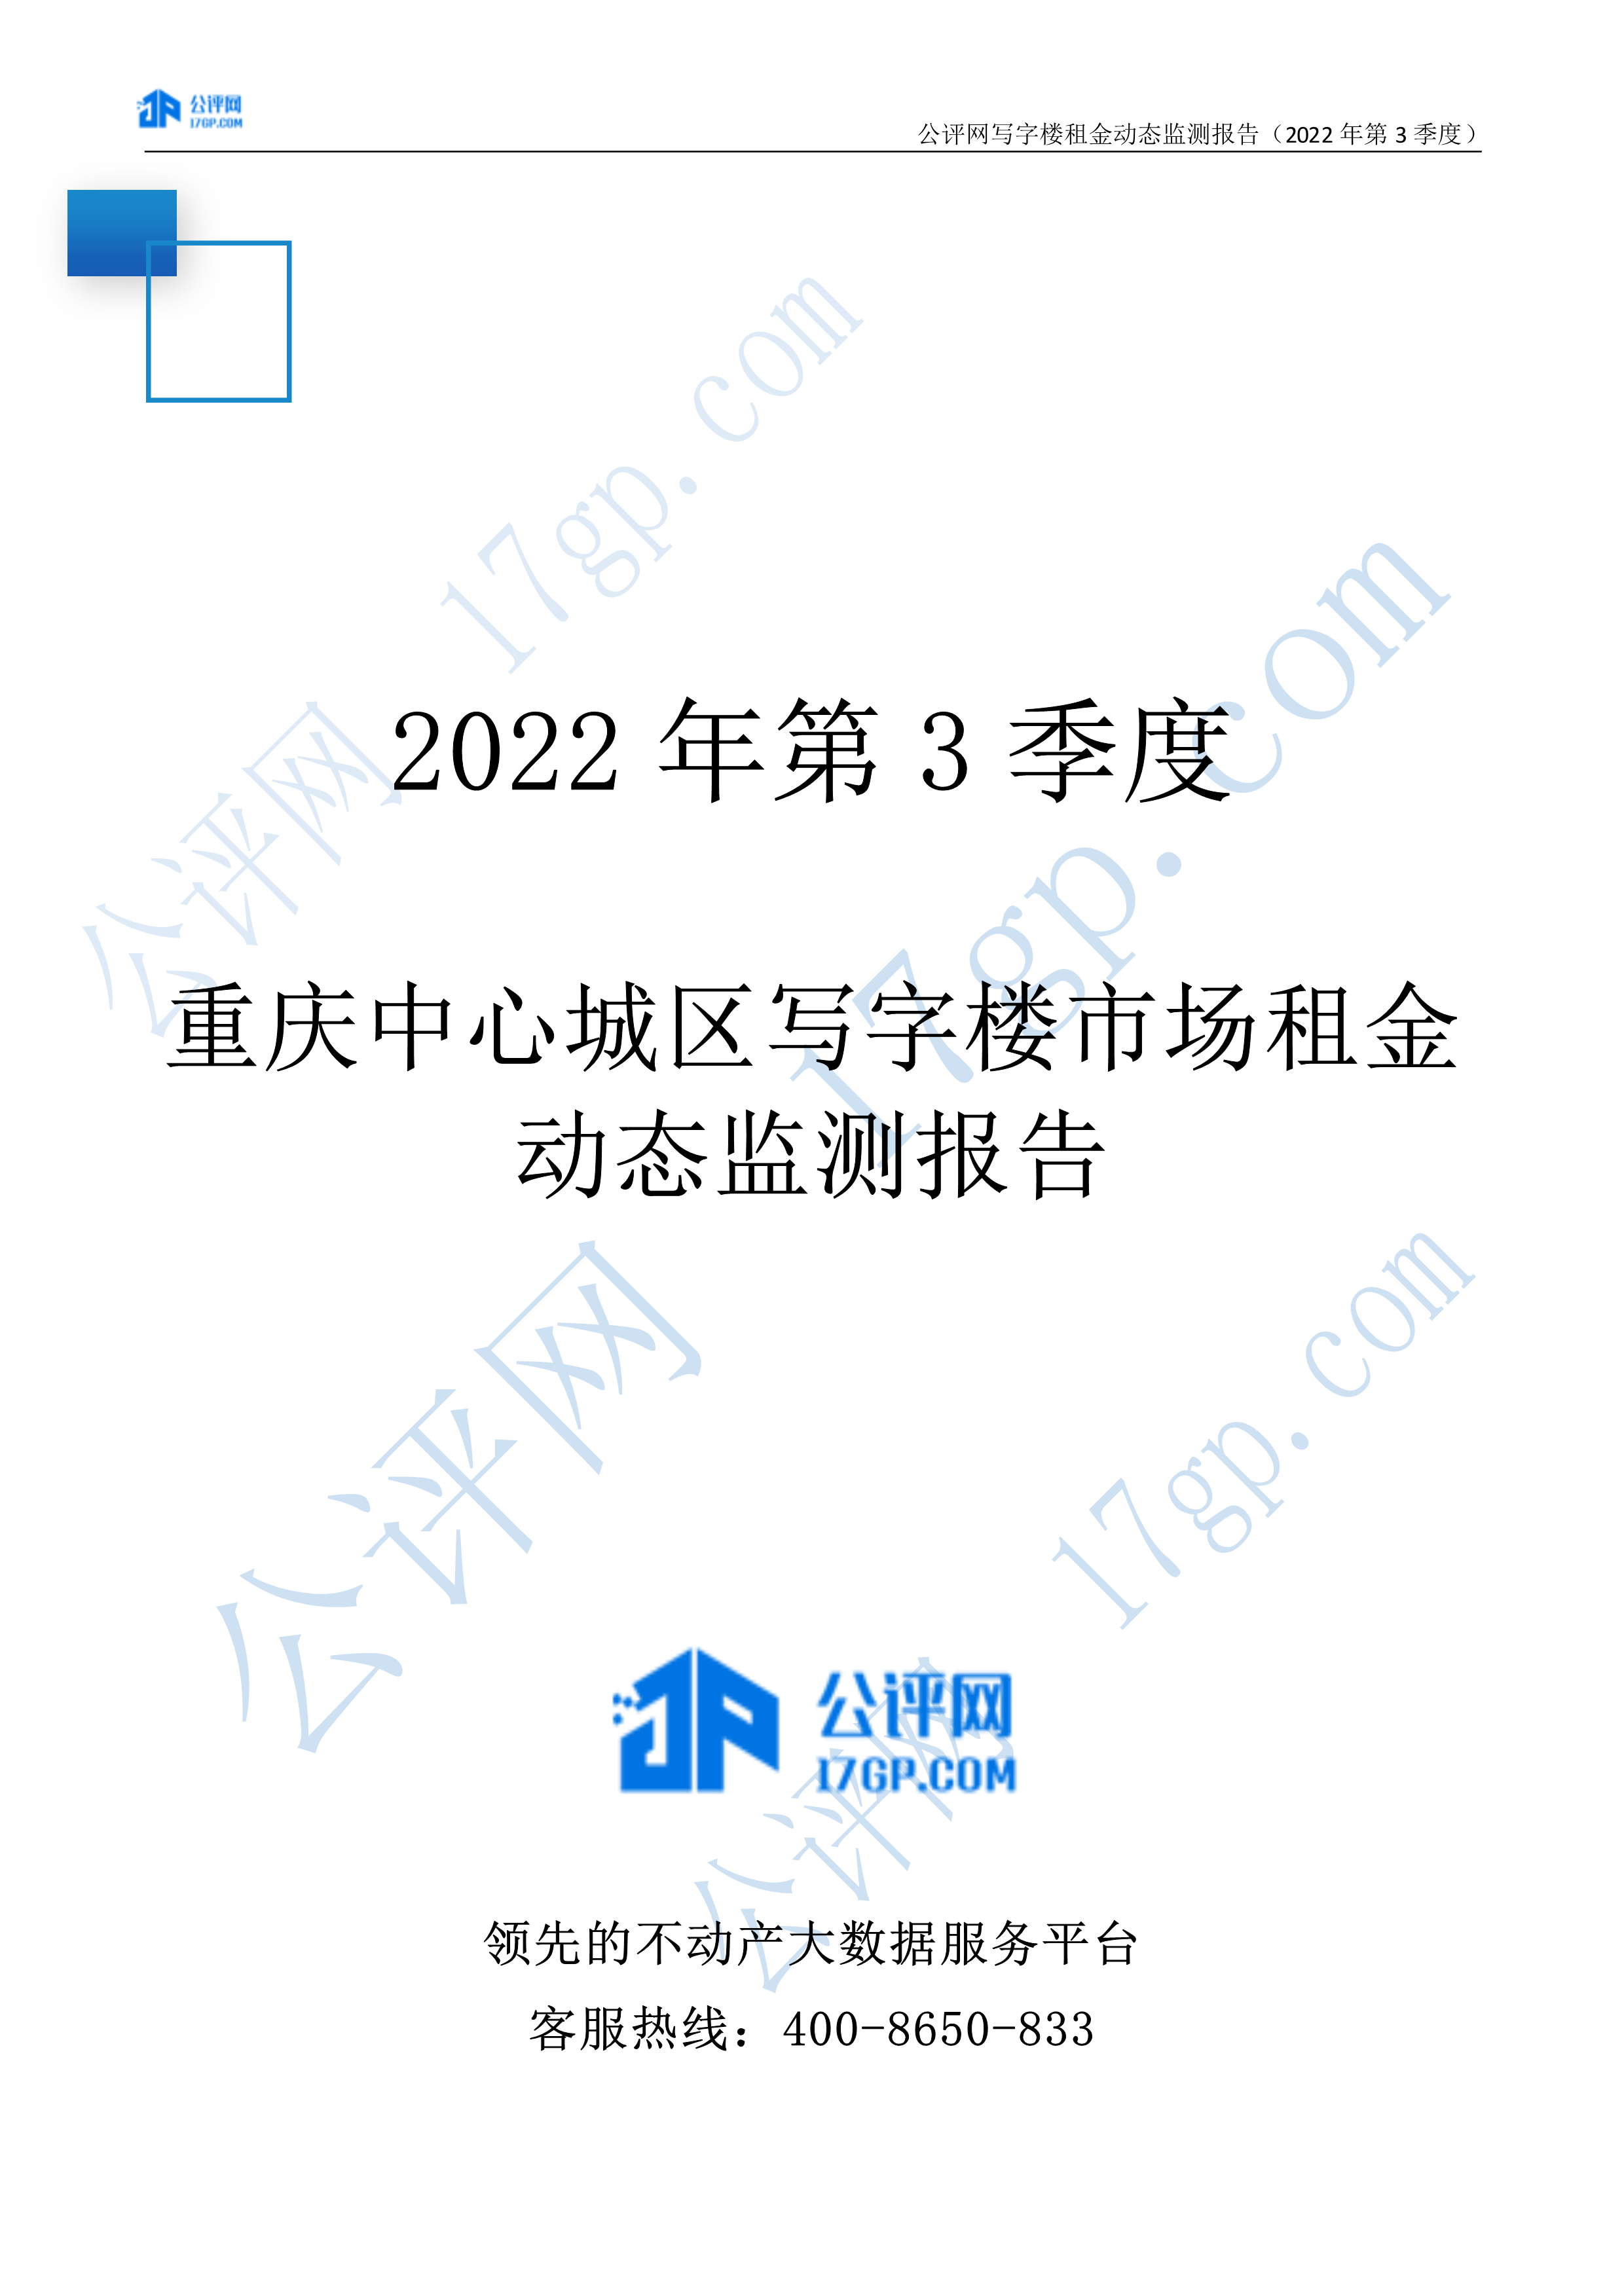 103012435816_02022年3季度-重庆中心城区写字楼市场租金动态监测报告-20221028(1)_1.Png